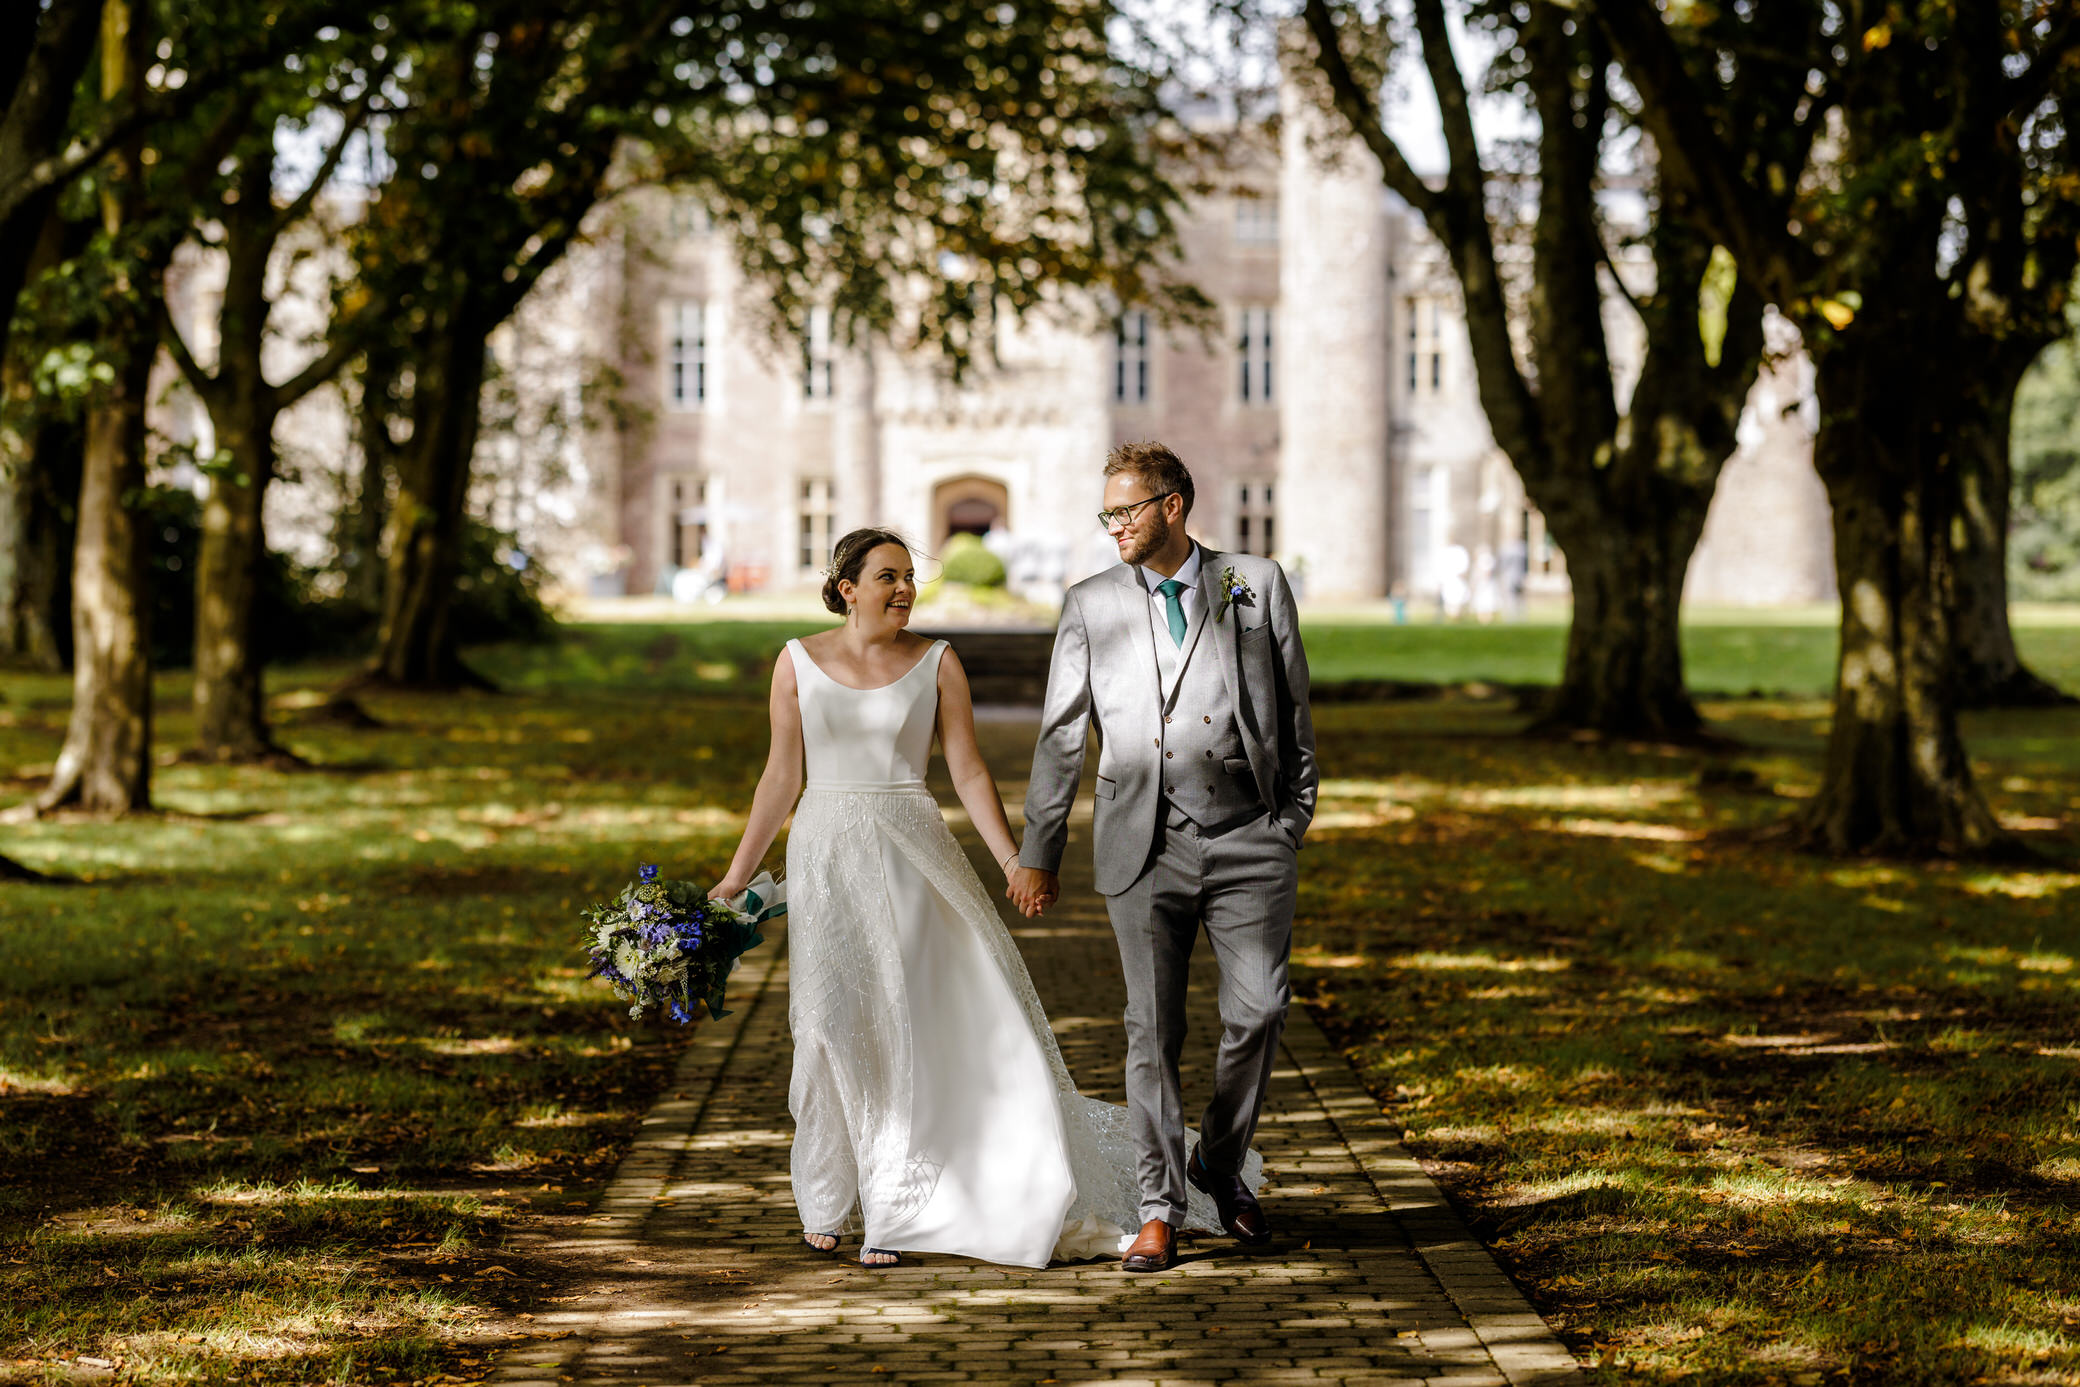 Hensol Castle Wedding - Bride and Groom